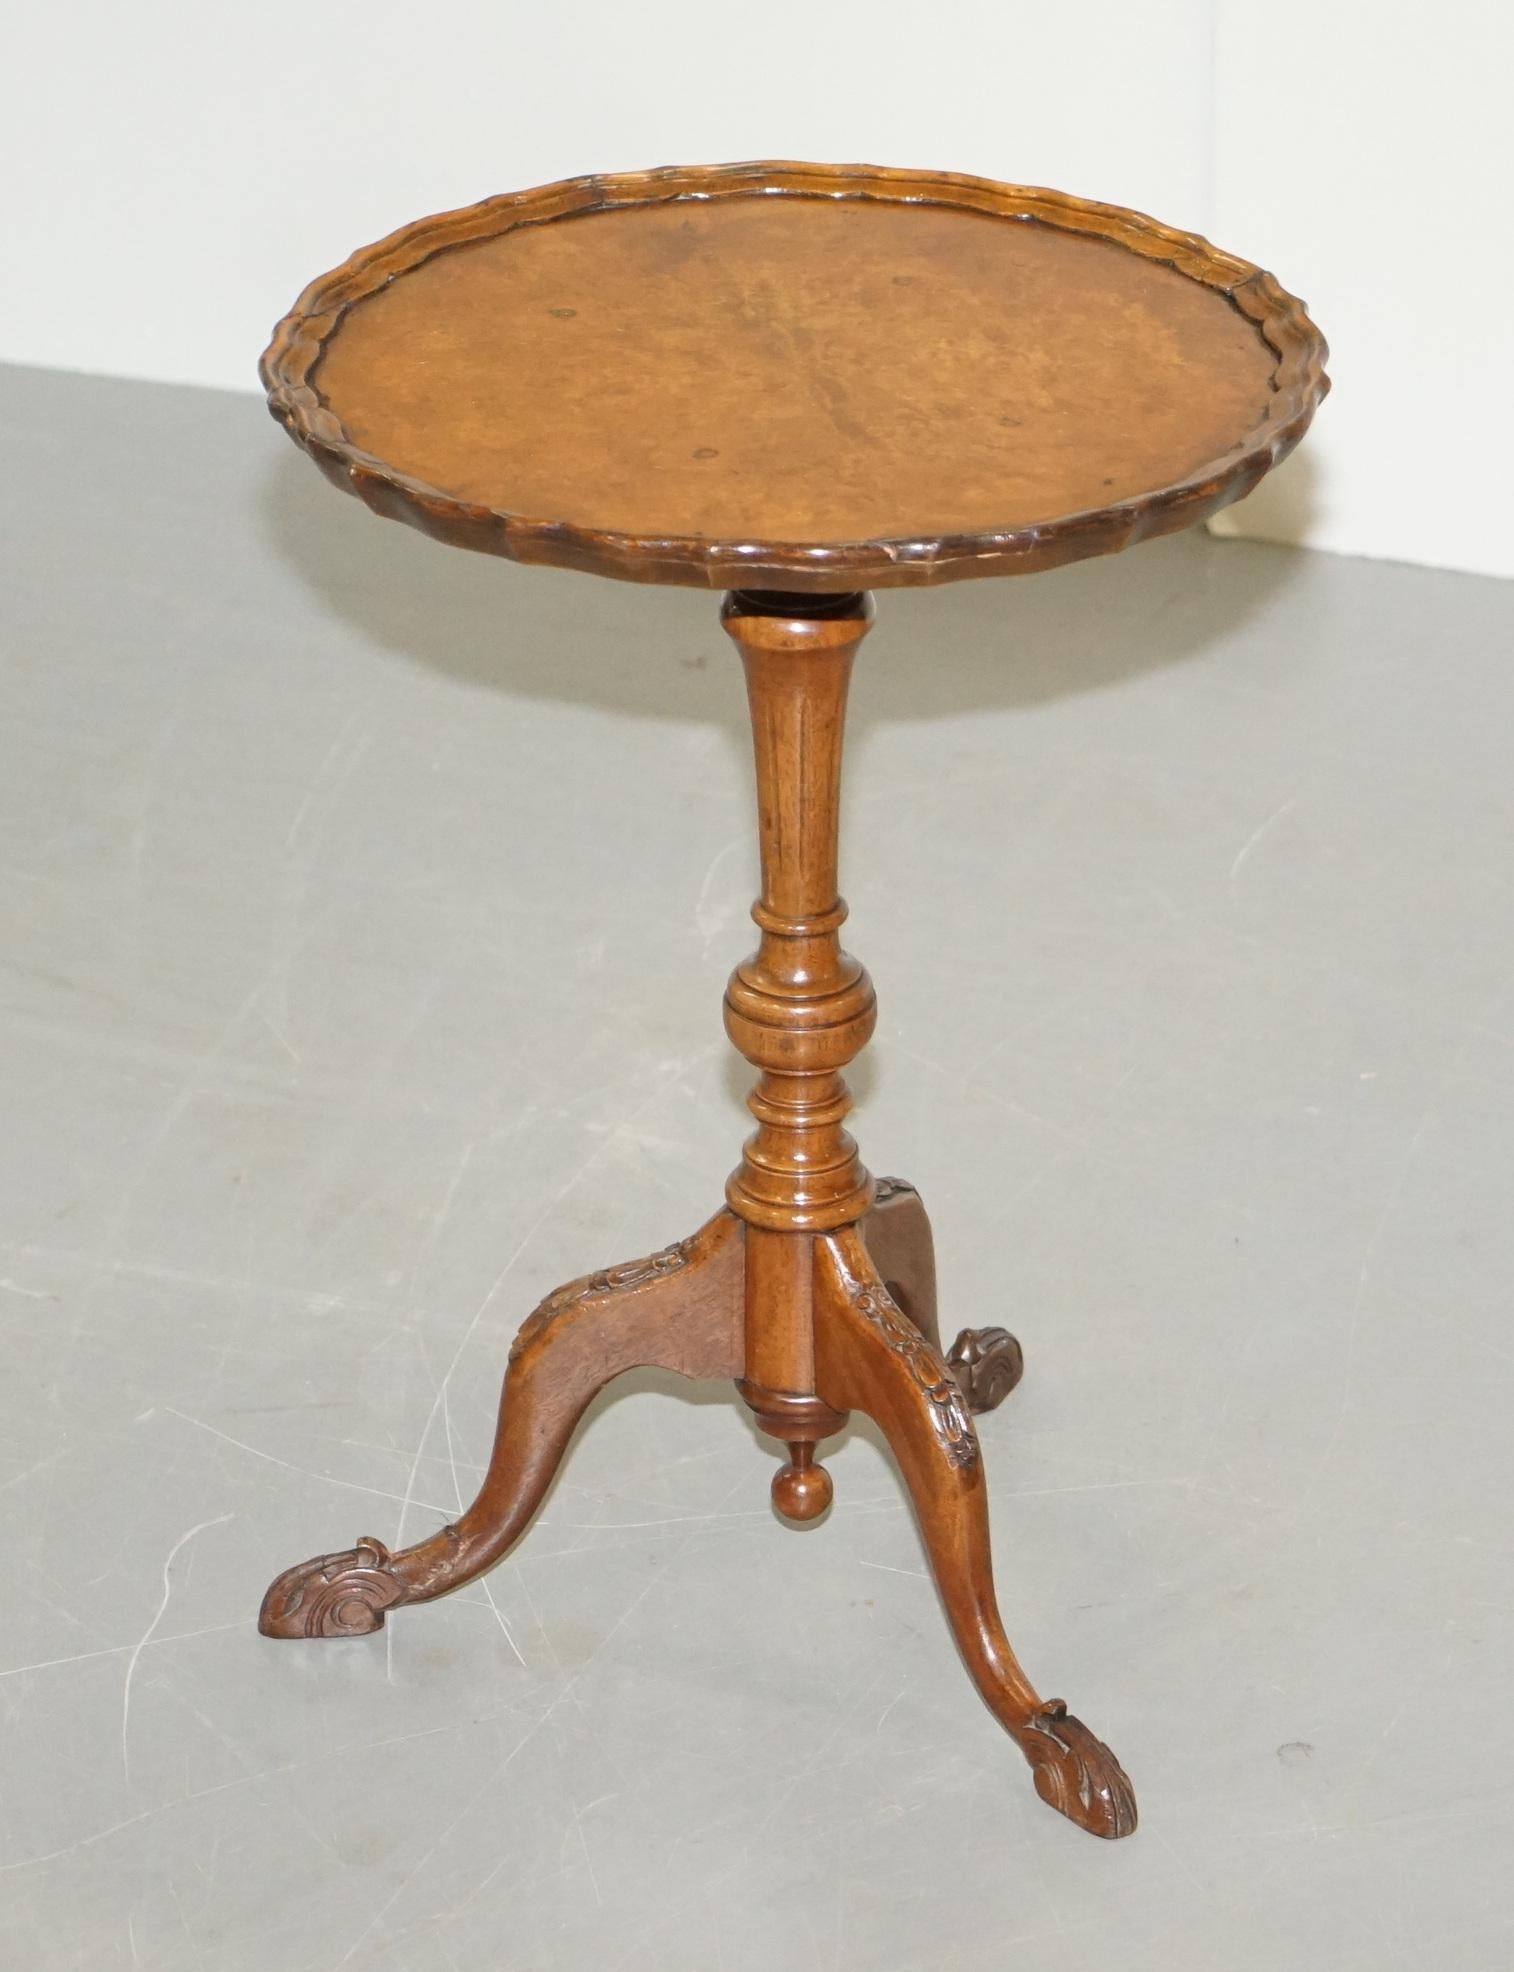 Nous avons le plaisir de proposer à la vente cette sublime table tripode Victorienne vers 1880 en ronce de noyer

Une magnifique petite table d'appoint, fortement sculptée à la base et avec une patine de bois à mourir sur le dessus

Il y aura